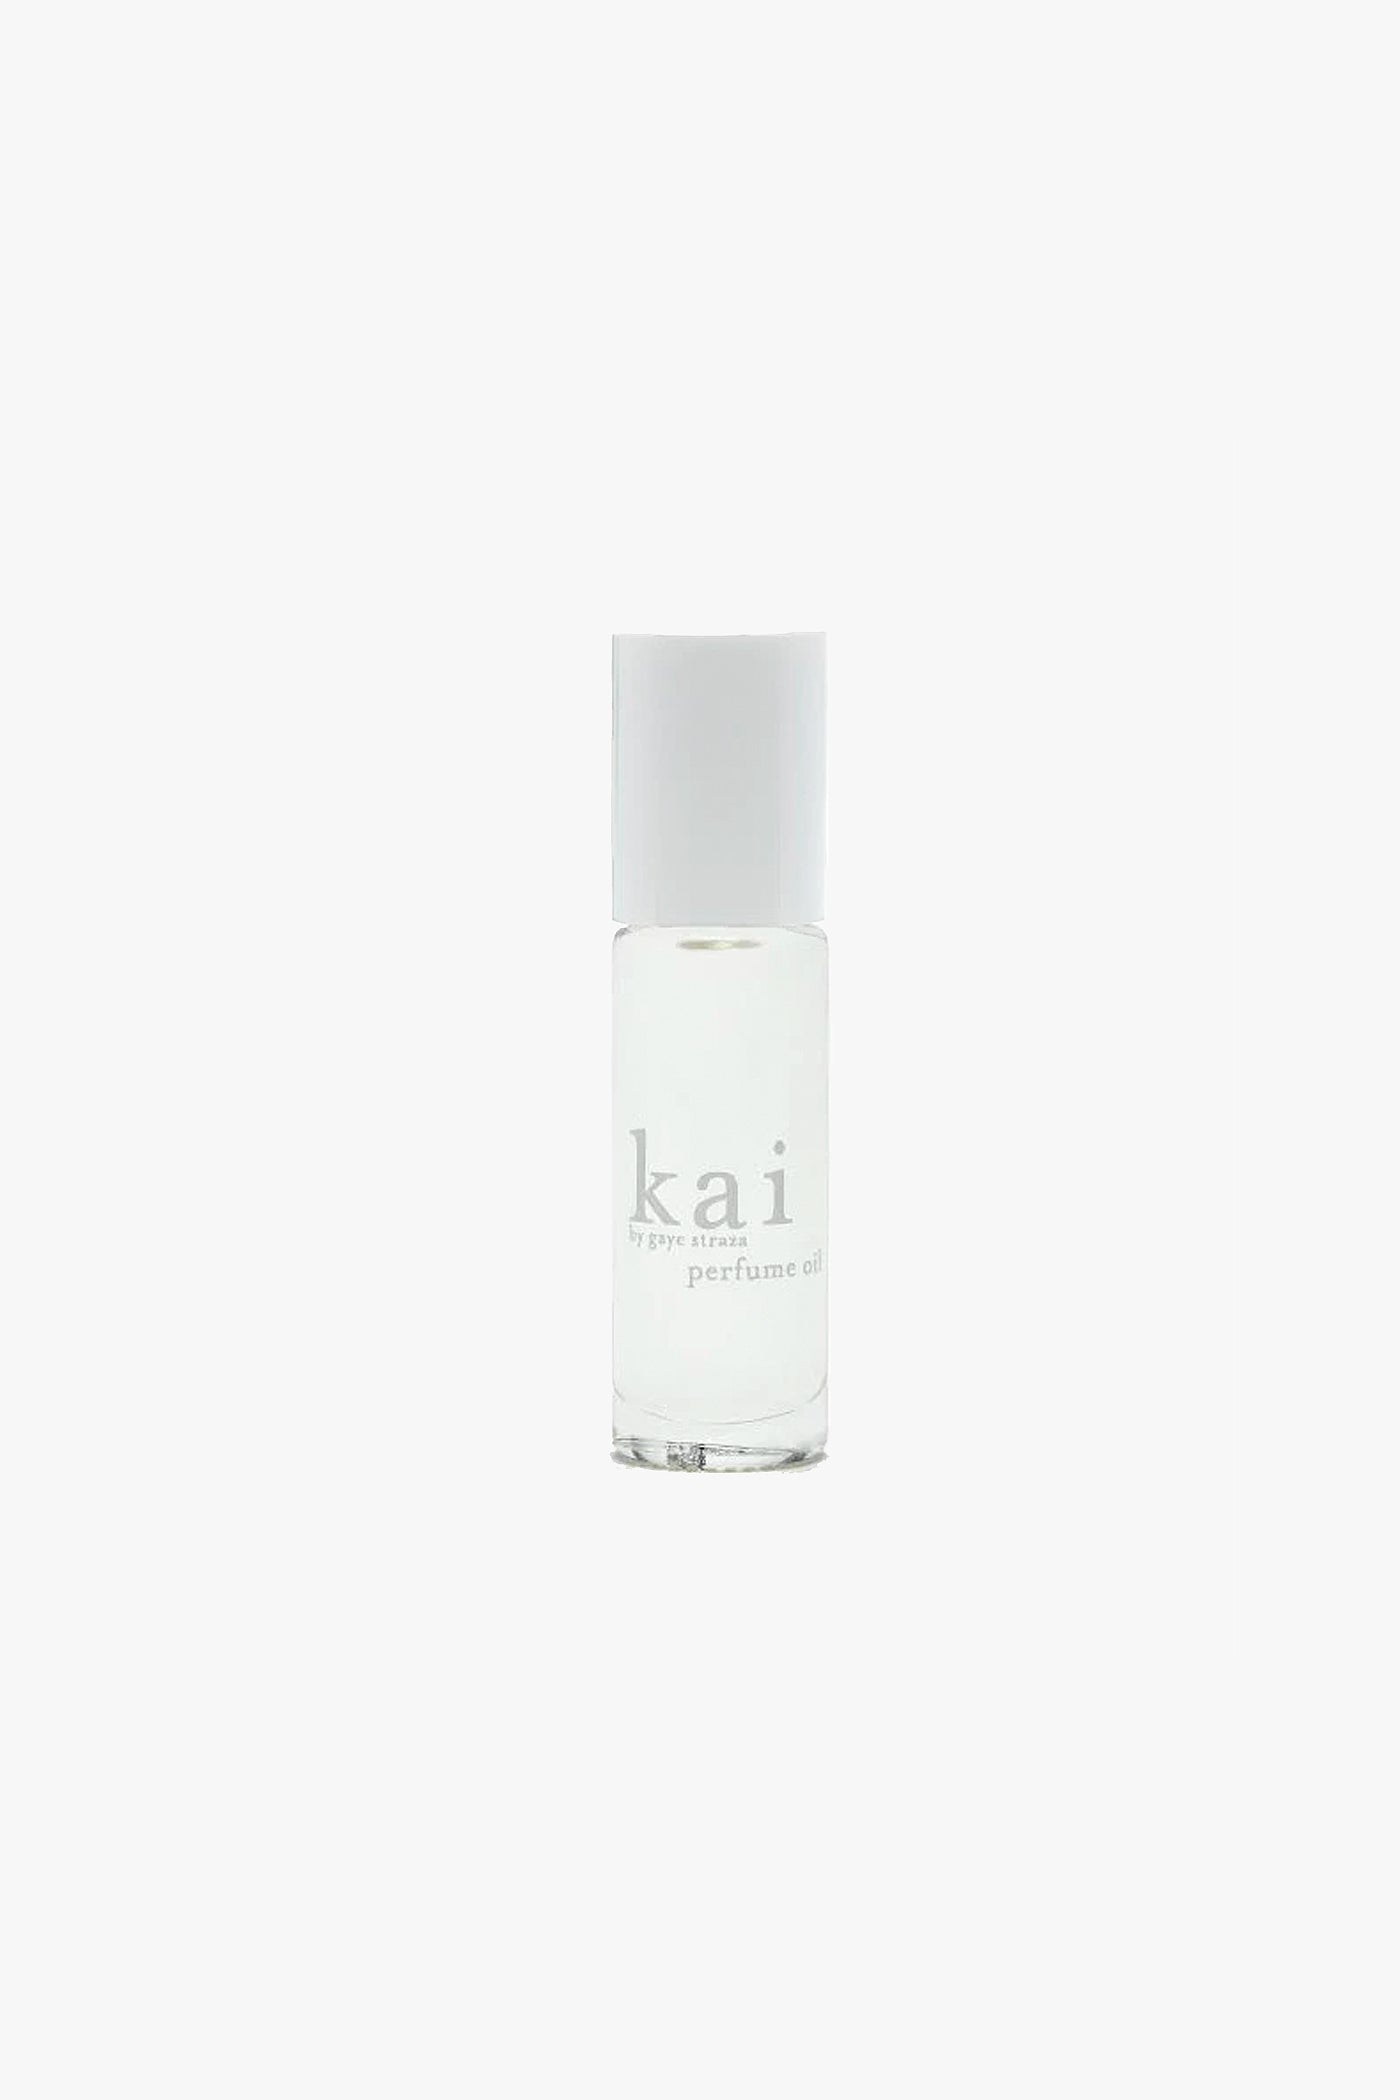 Kai Kai Perfume Oil